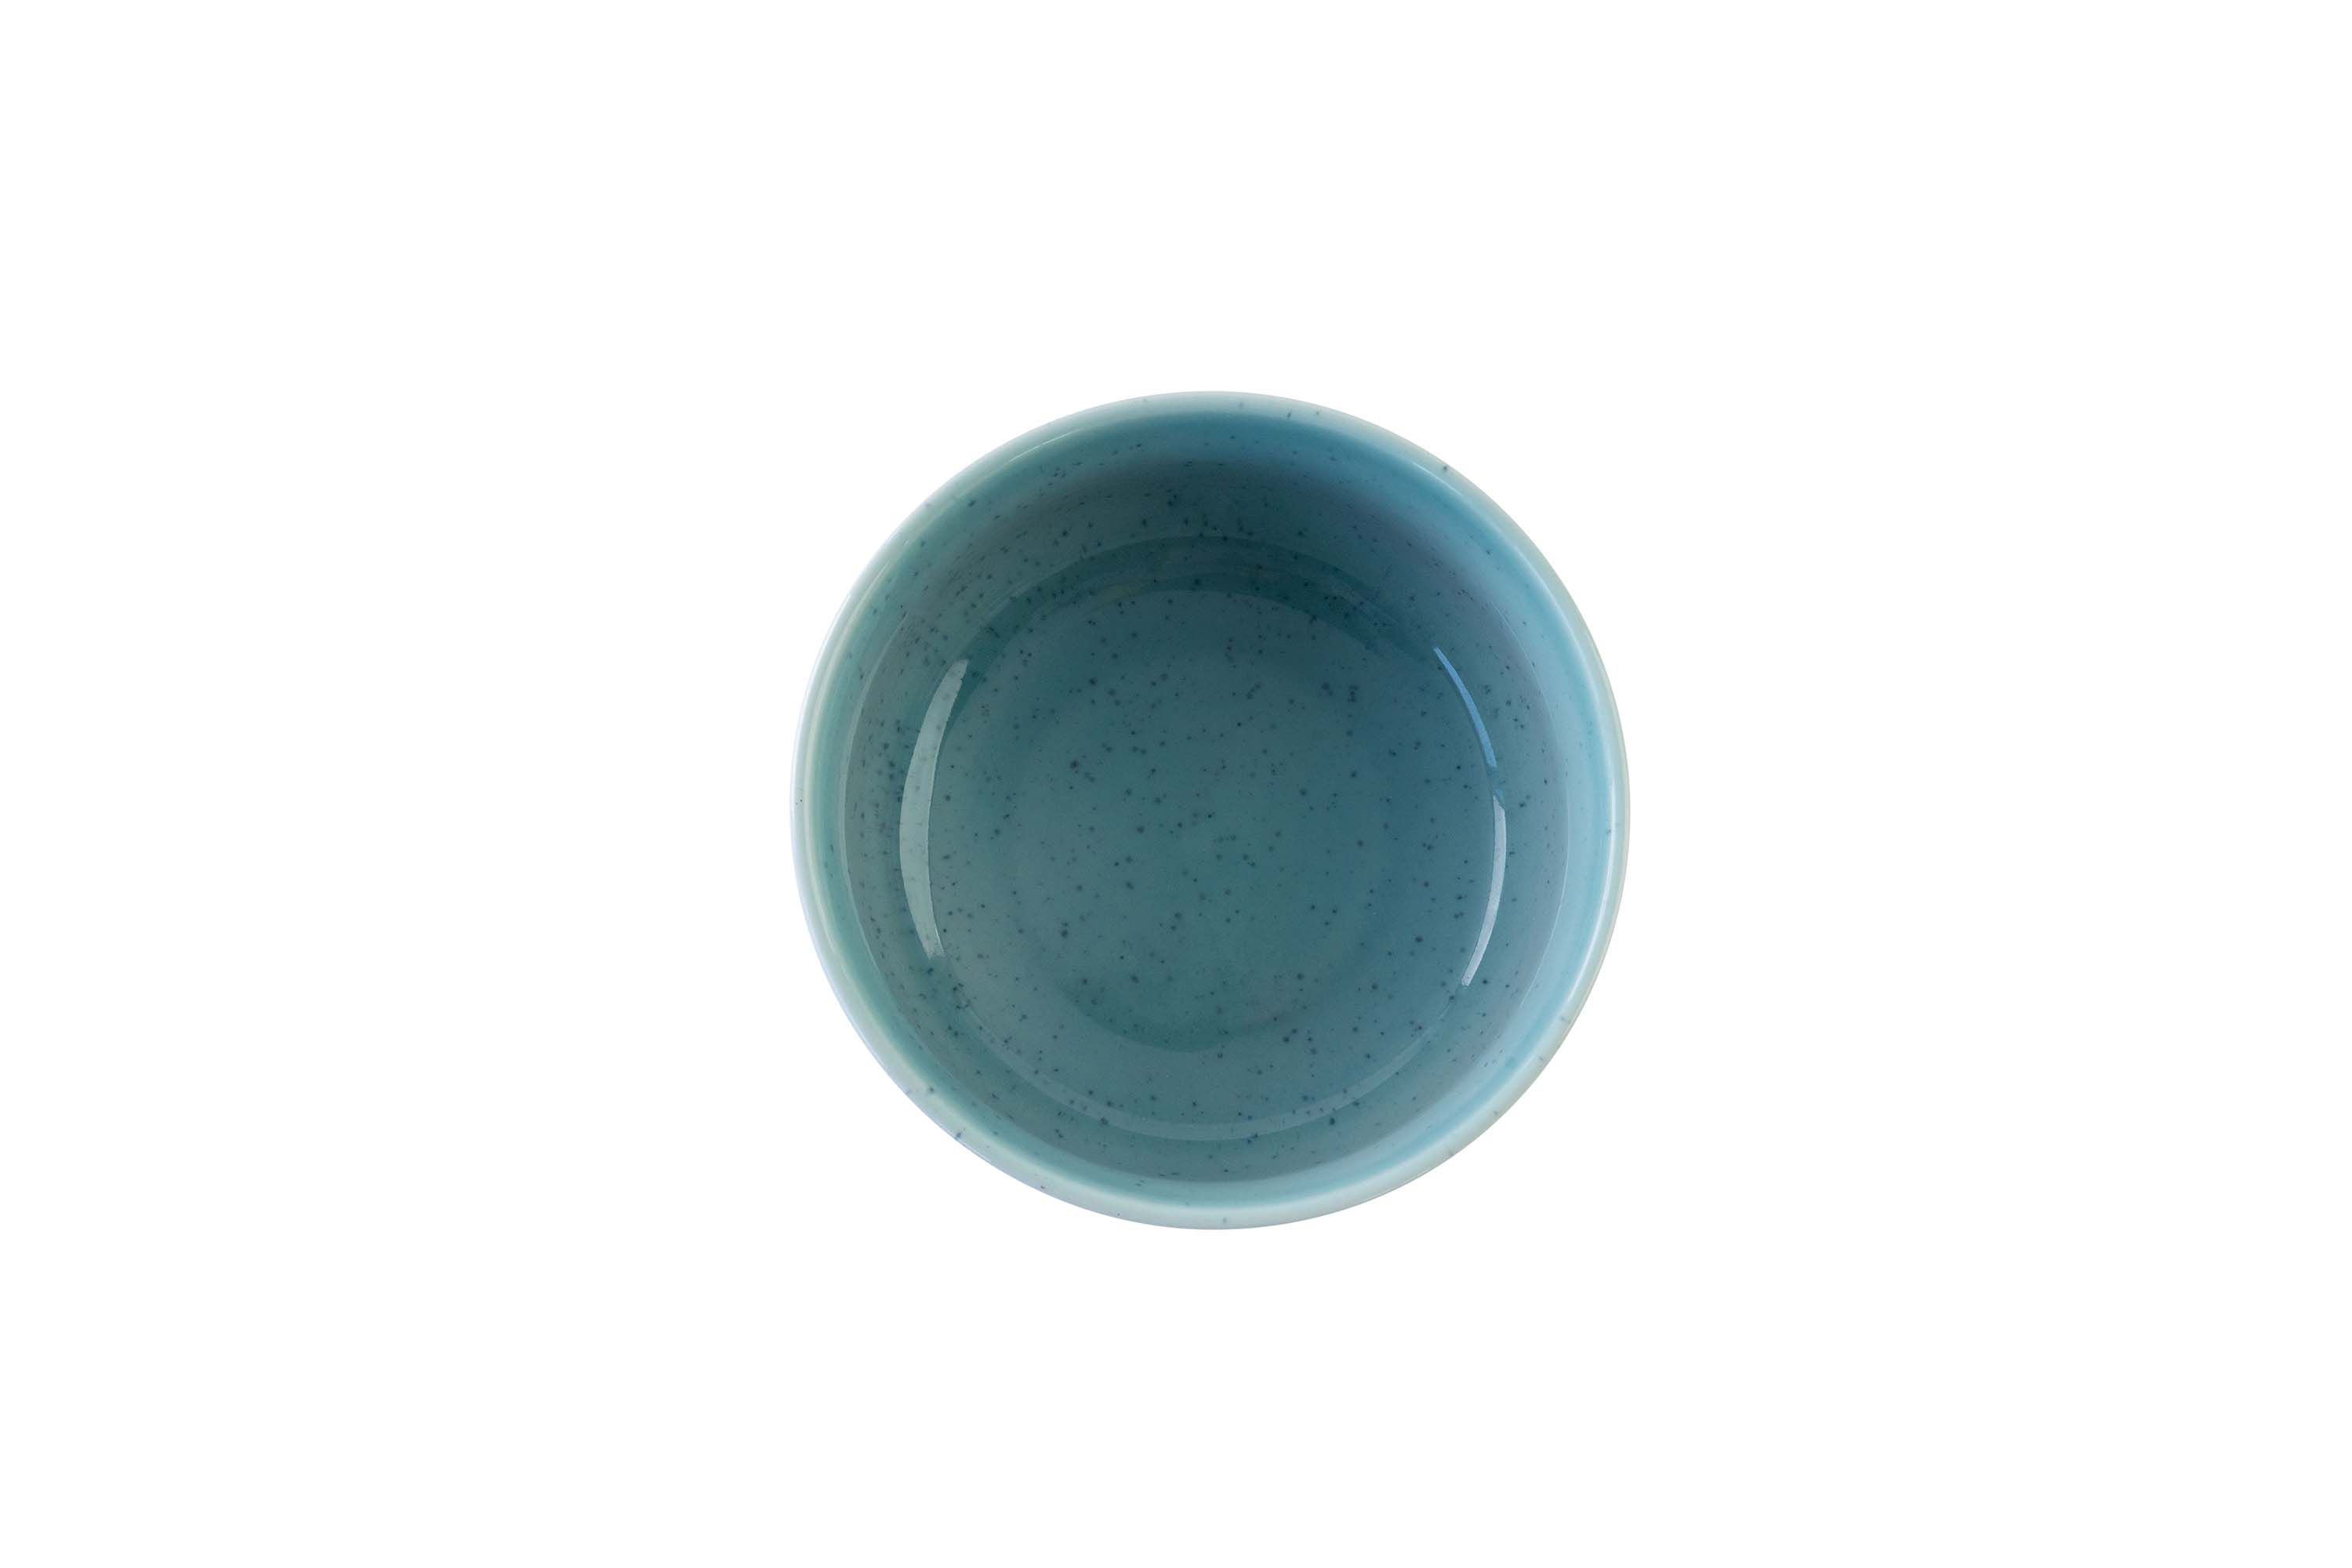 Blick von oben auf die blau-beige Keramikschüssel